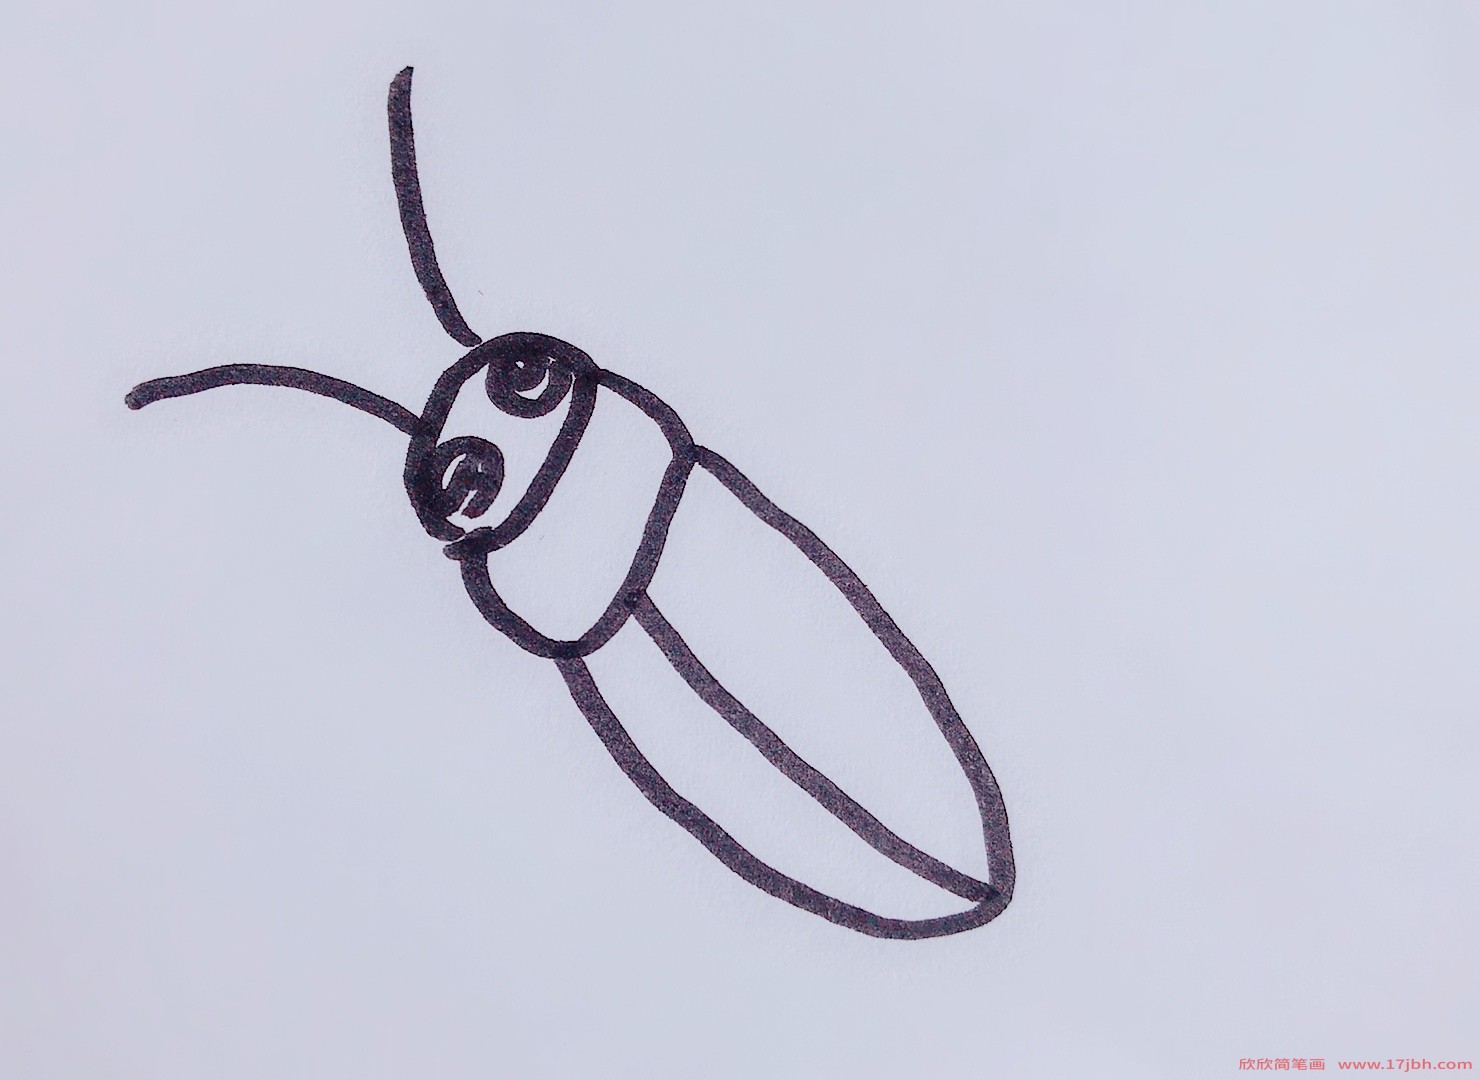 蟋蟀怎么画简笔画